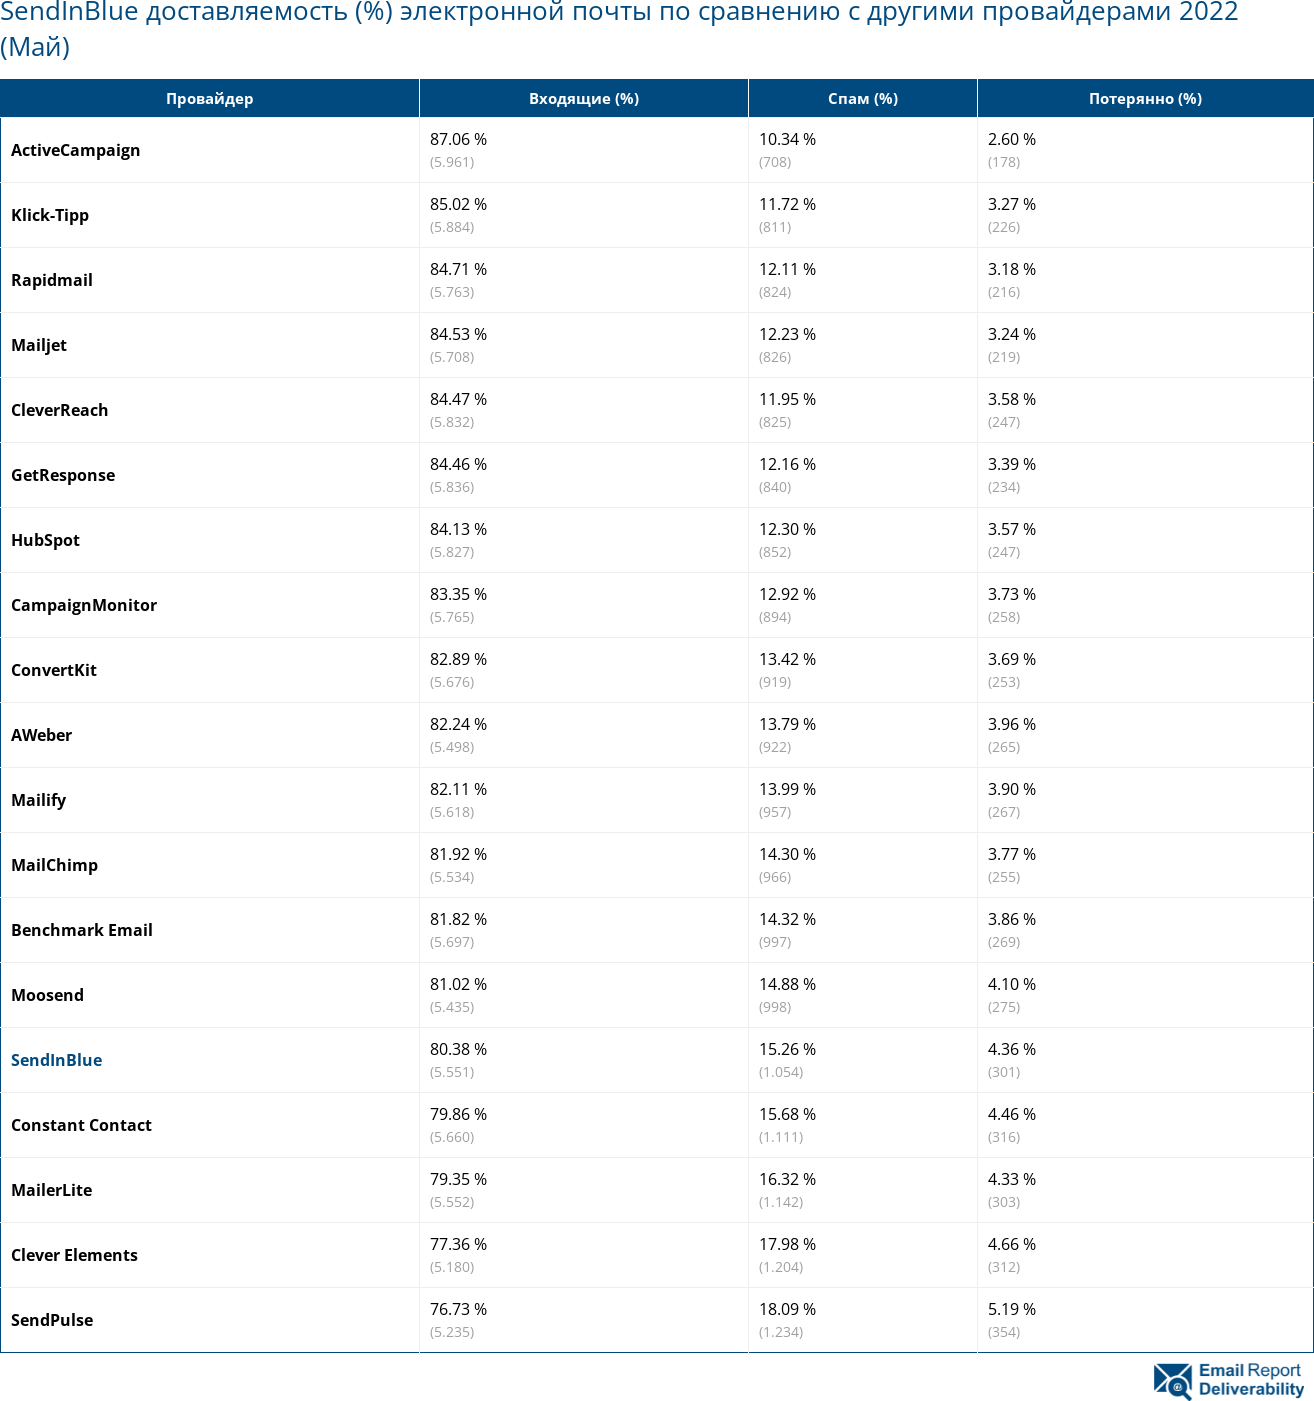 SendInBlue доставляемость (%) электронной почты по сравнению с другими провайдерами 2022 (Май)